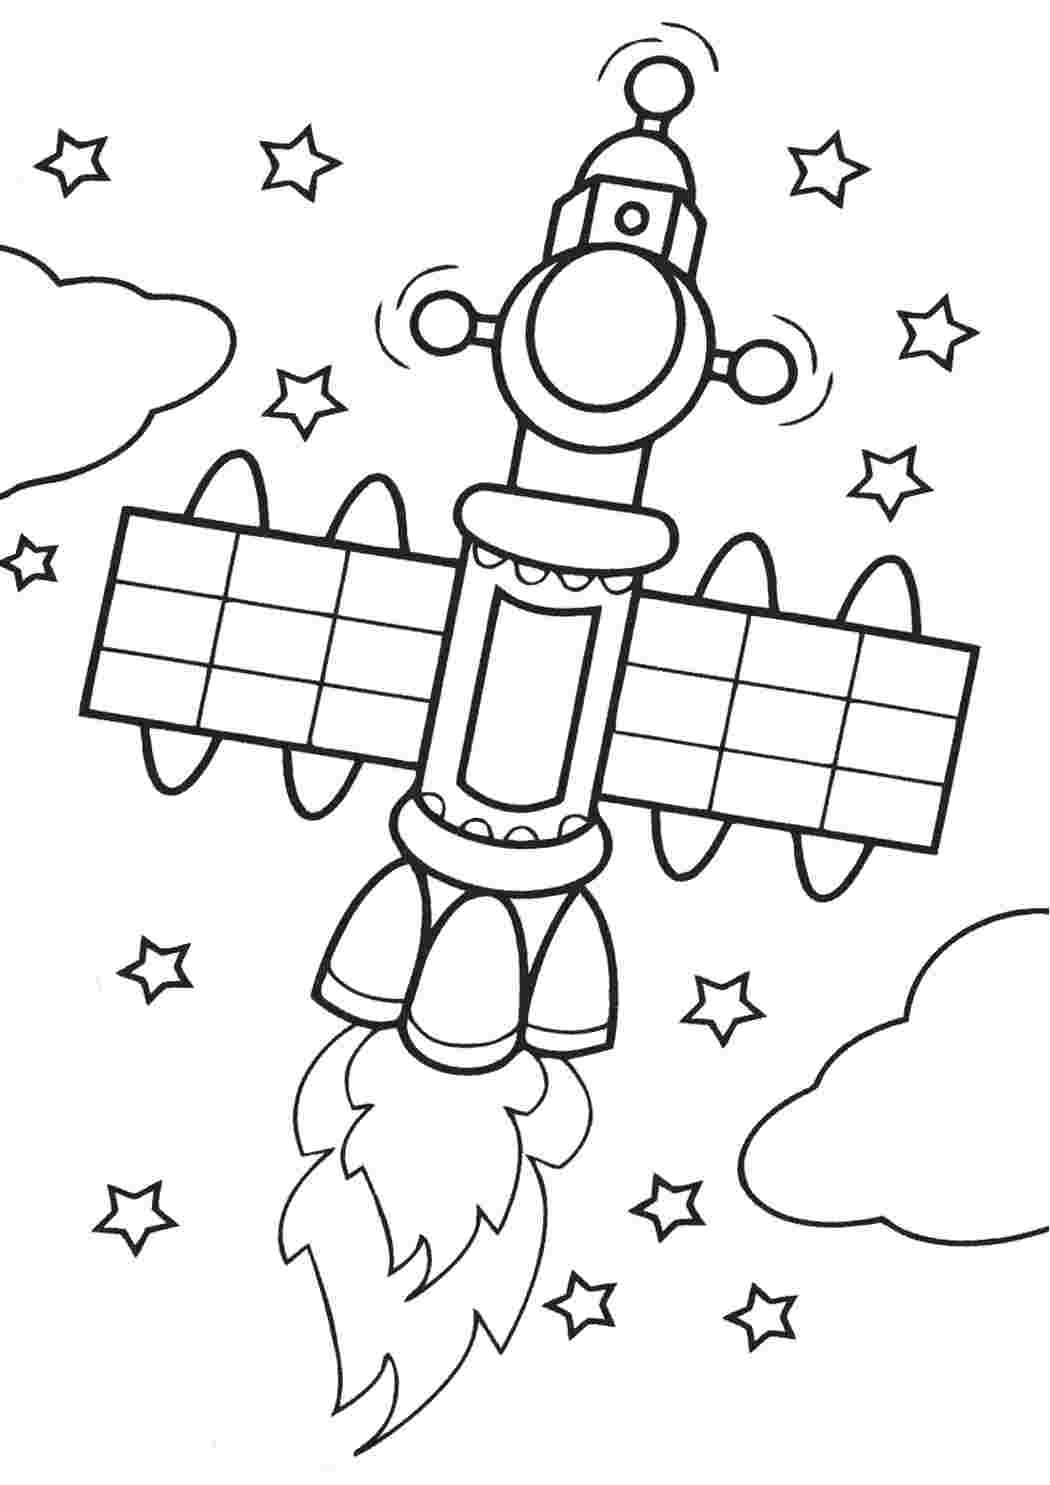 Раскраска космос для детей 4 5. Раскраска. В космосе. Космос раскраска для детей. Раскраска для малышей. Космос. Раскраска на тему космос для детей.